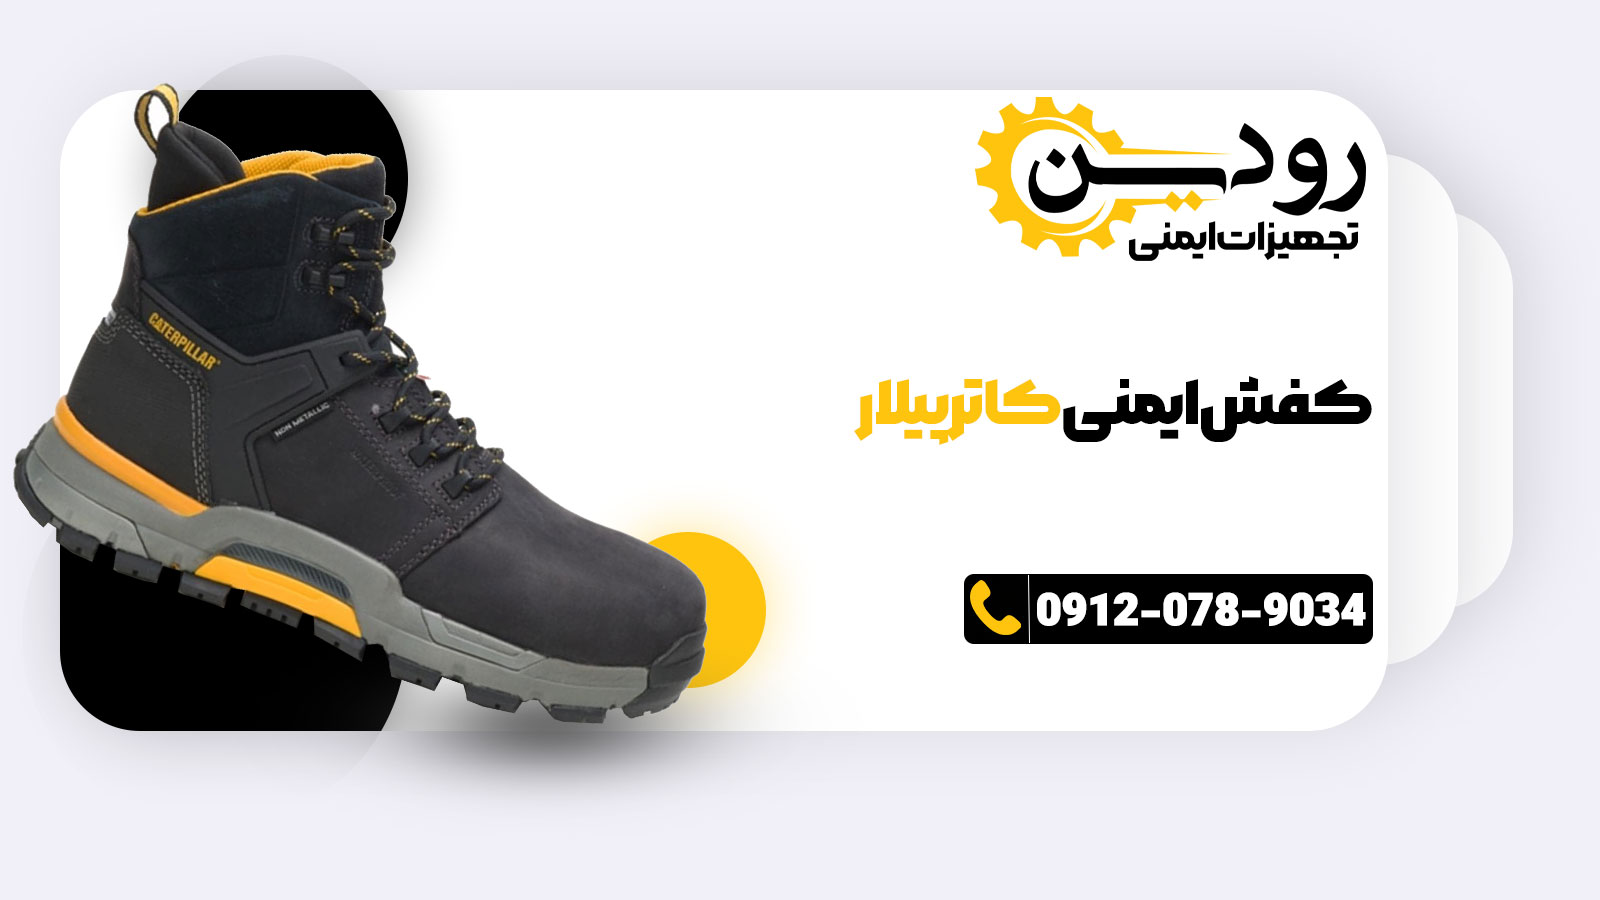 خرید مستقیم از نمایندگی فروش کفش ایمنی کاترپیلار در تهران